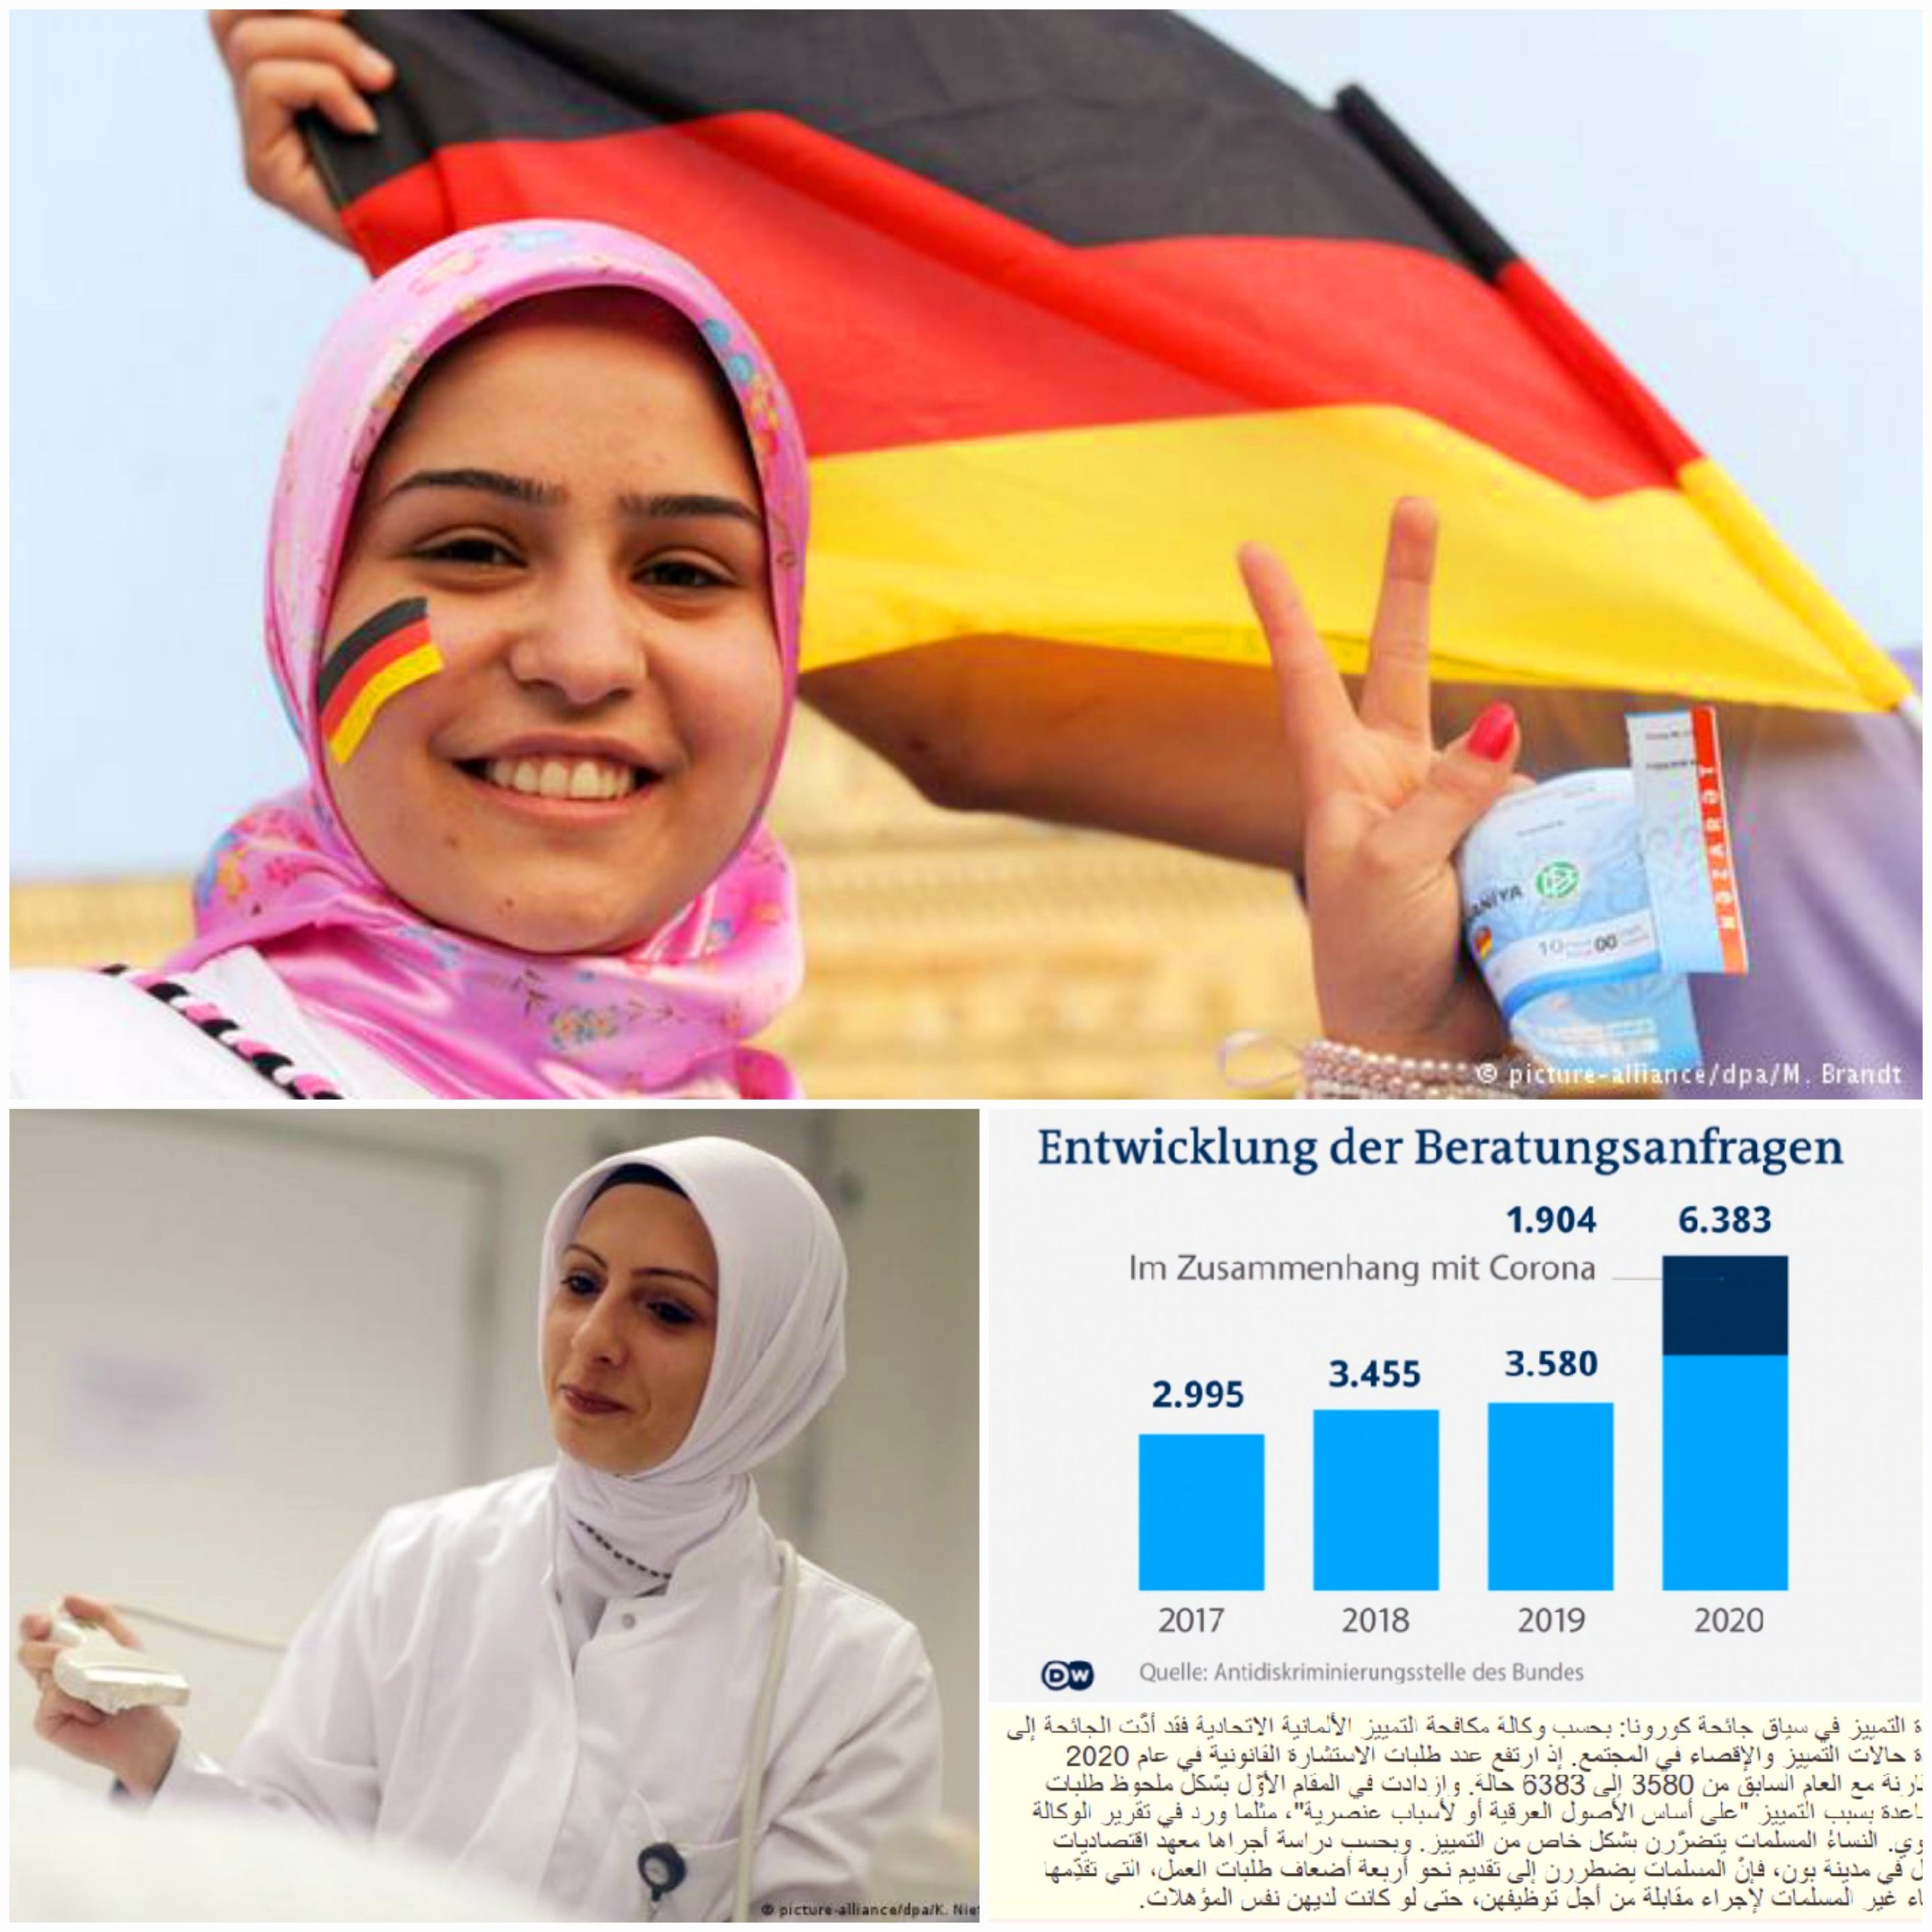 تقرير ألماني نشر أمثلة عديدة لمعاناة مسلمات ألمانيا من التمييز في العمل